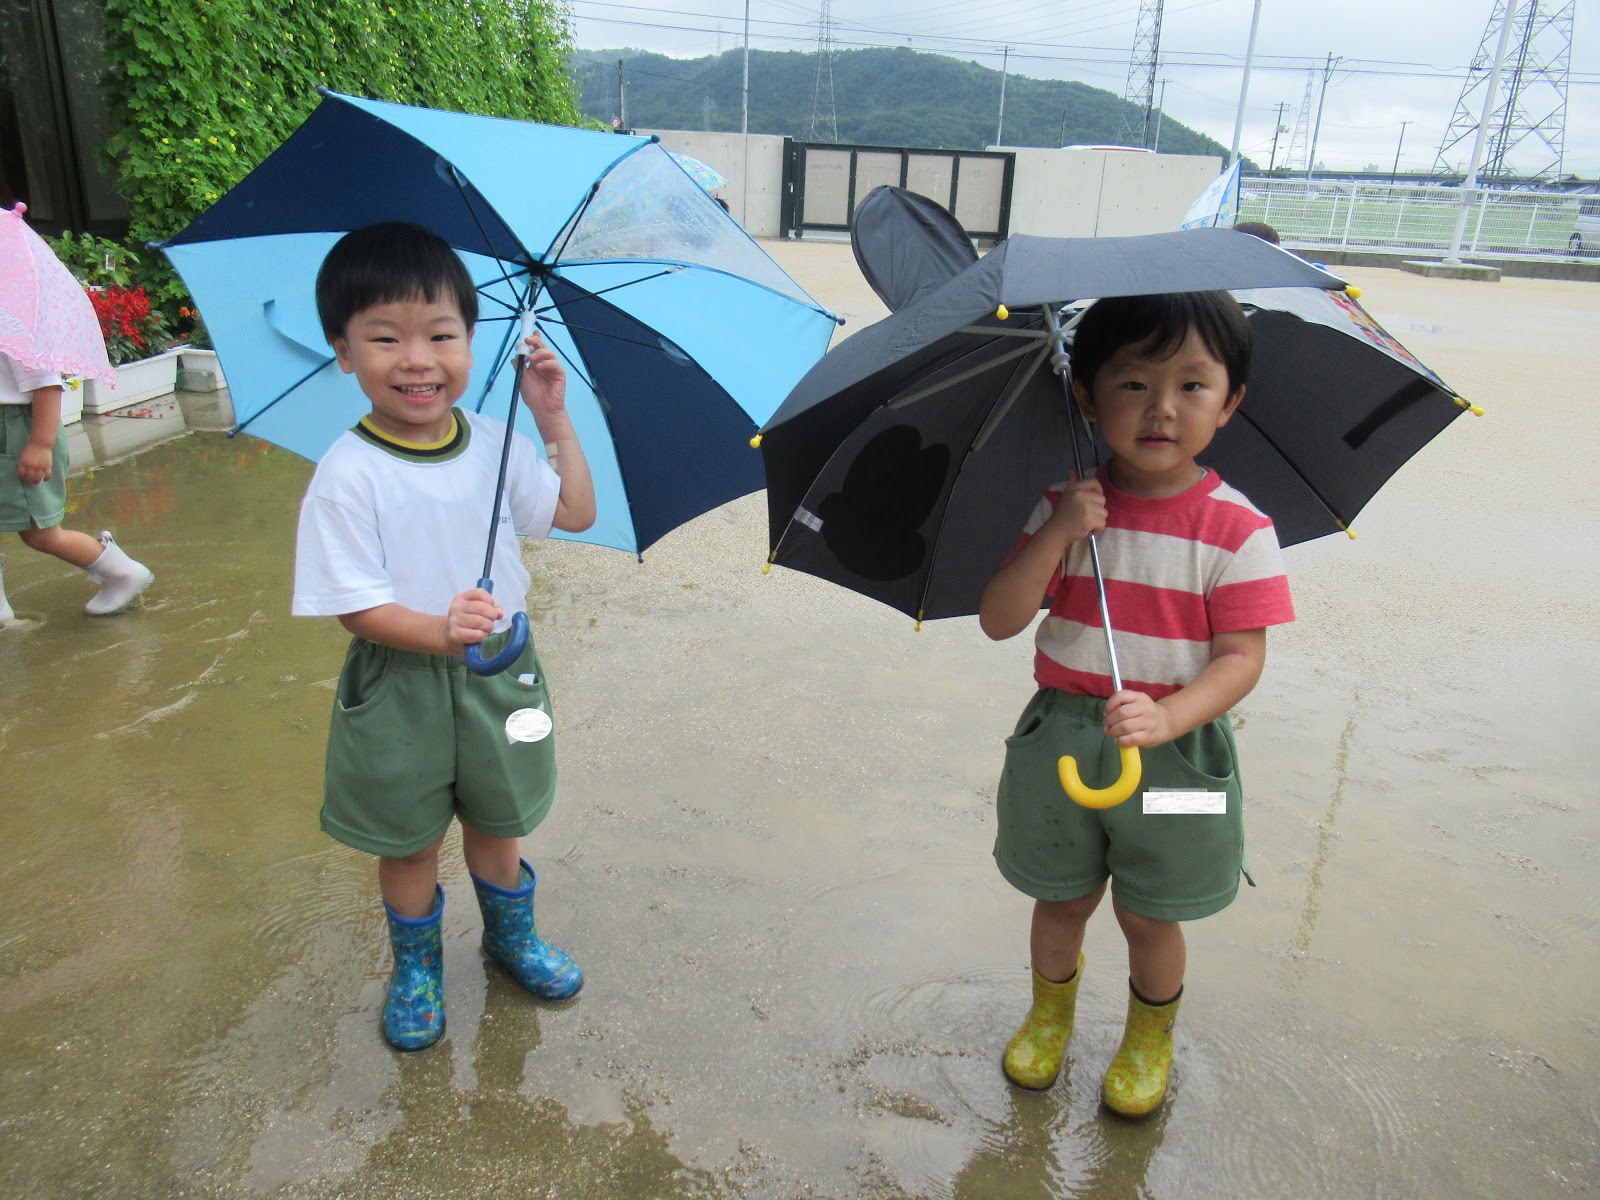 第四ひかり保育園ブログ 雨の日にお散歩をしたよ☔さくら組・ゆり組